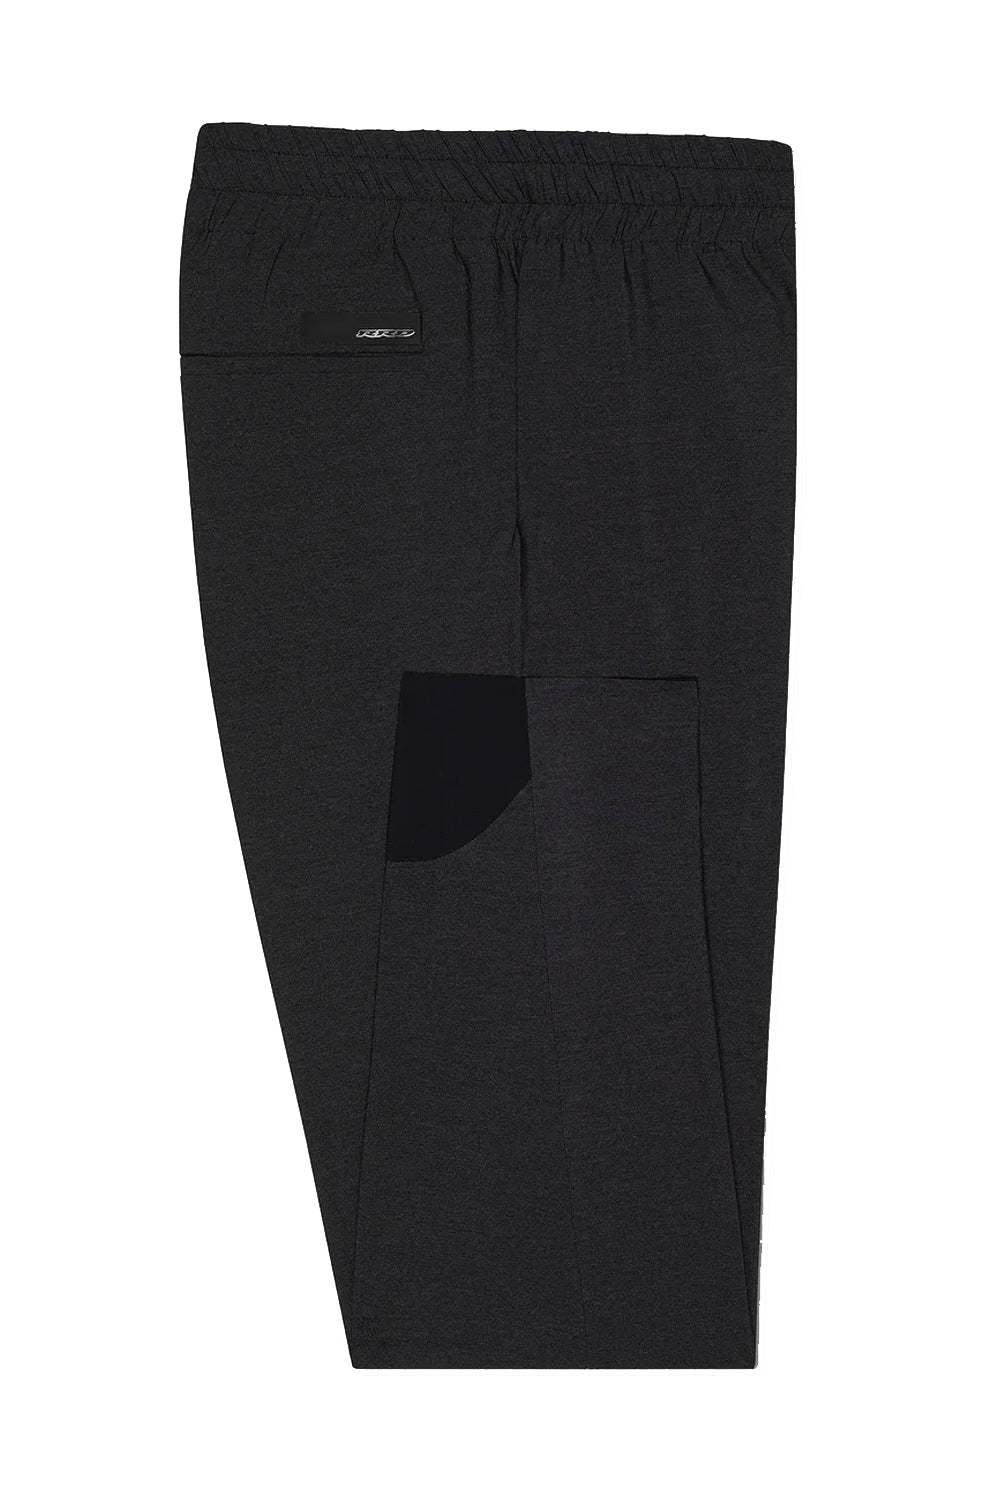 RRD Pantaloni extralight jumper